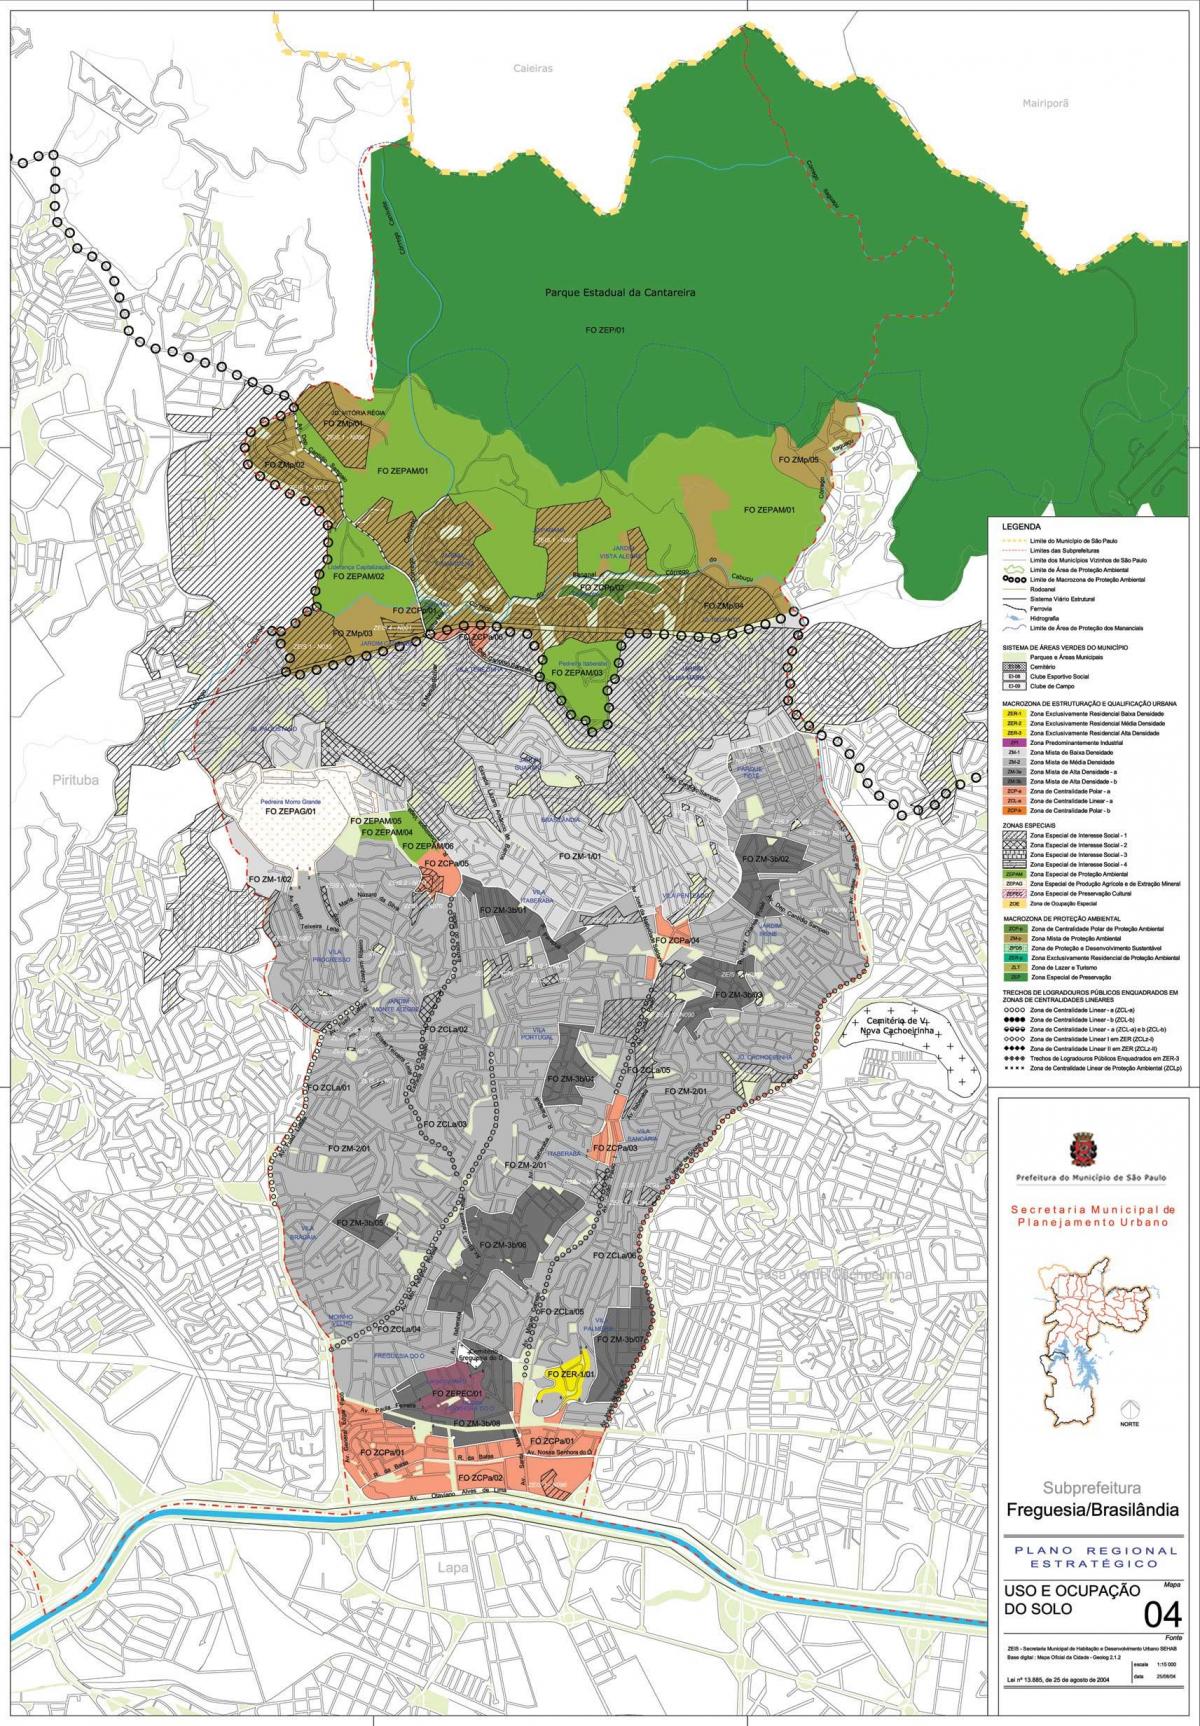 Kort over Freguesia gøre - São Paulo - Besættelse af jord